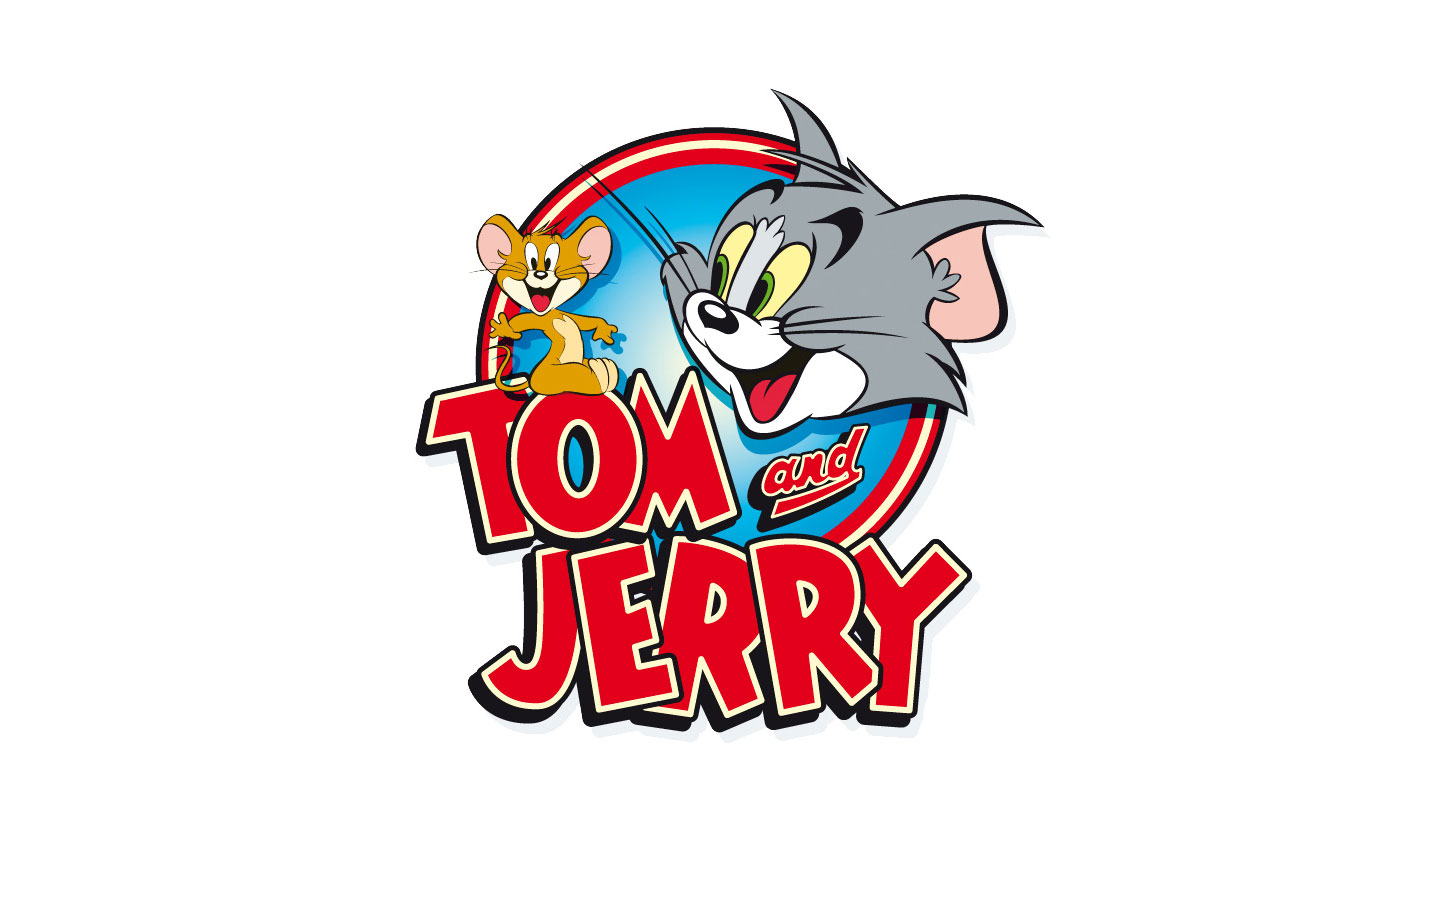 Tải ảnh đẹp về Tom và Jerry